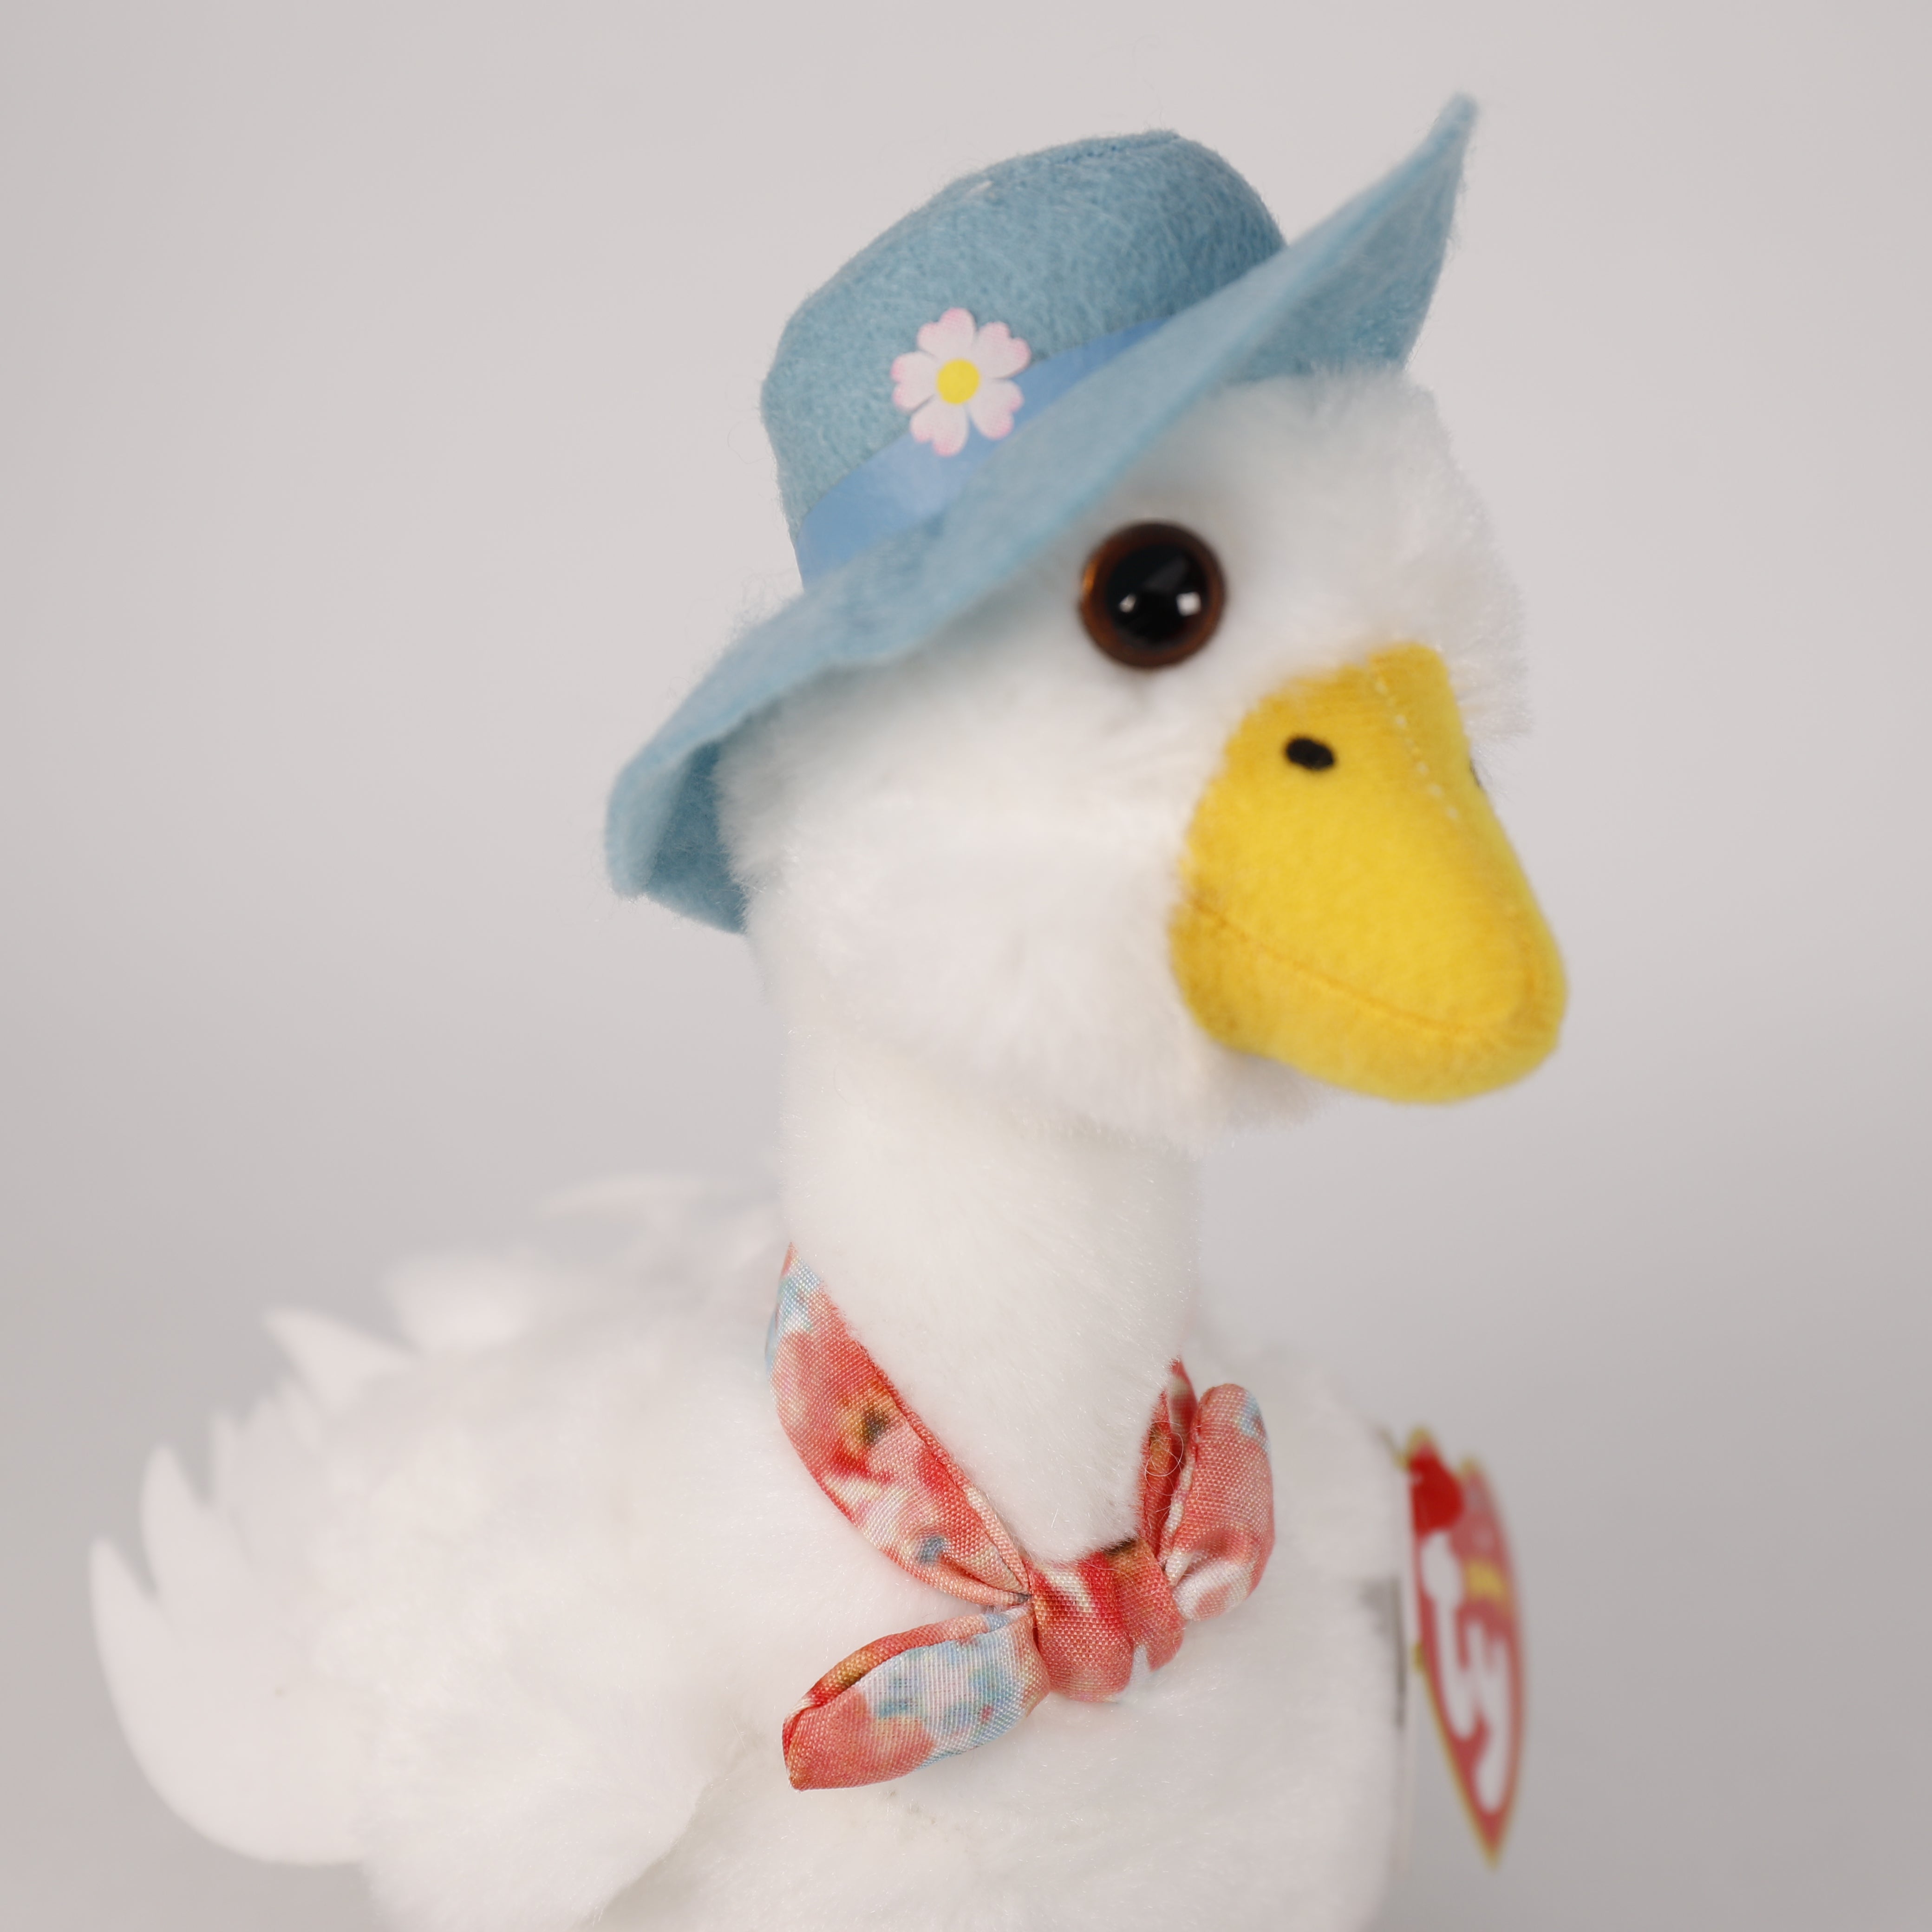 Plüschtier Ente mit Glitzeraugen Jemima 15 cm, Super Weich, Spielzeug, TY Peter Rabbit